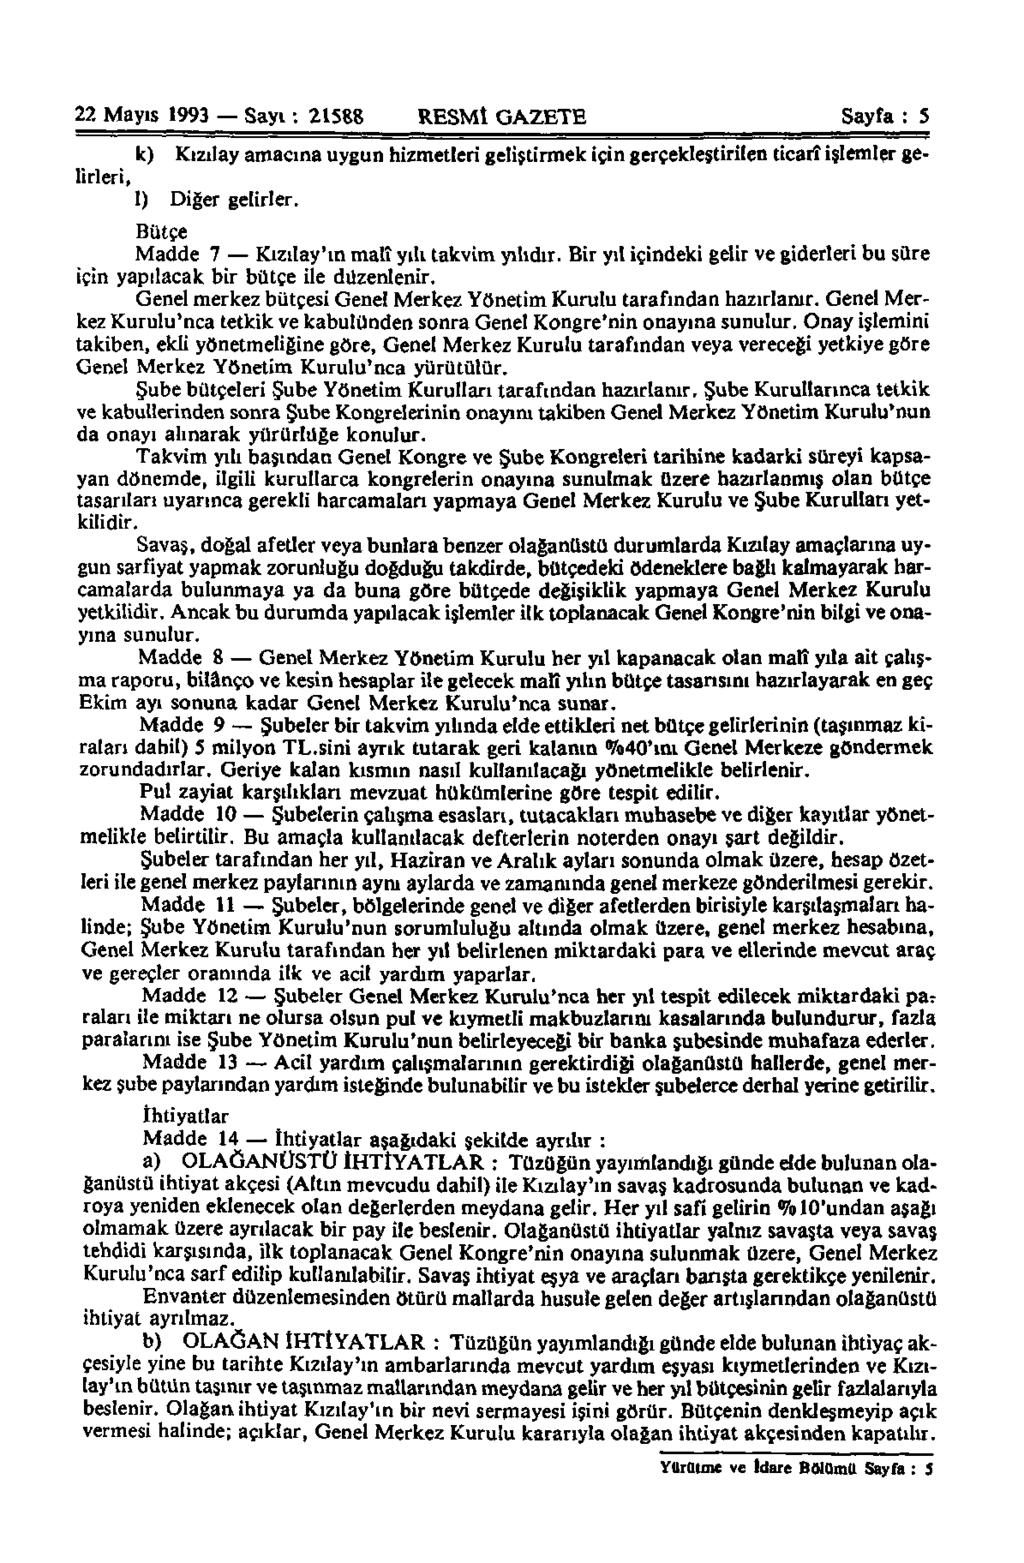 22 Mayıs 1993 Sayı: 21588 RESMÎ GAZETE Sayfa : 5 k) Kızılay amacına uygun hizmetleri geliştirmek için gerçekleştirilen ticarî işlemler gelirleri, I) Diğer gelirler.